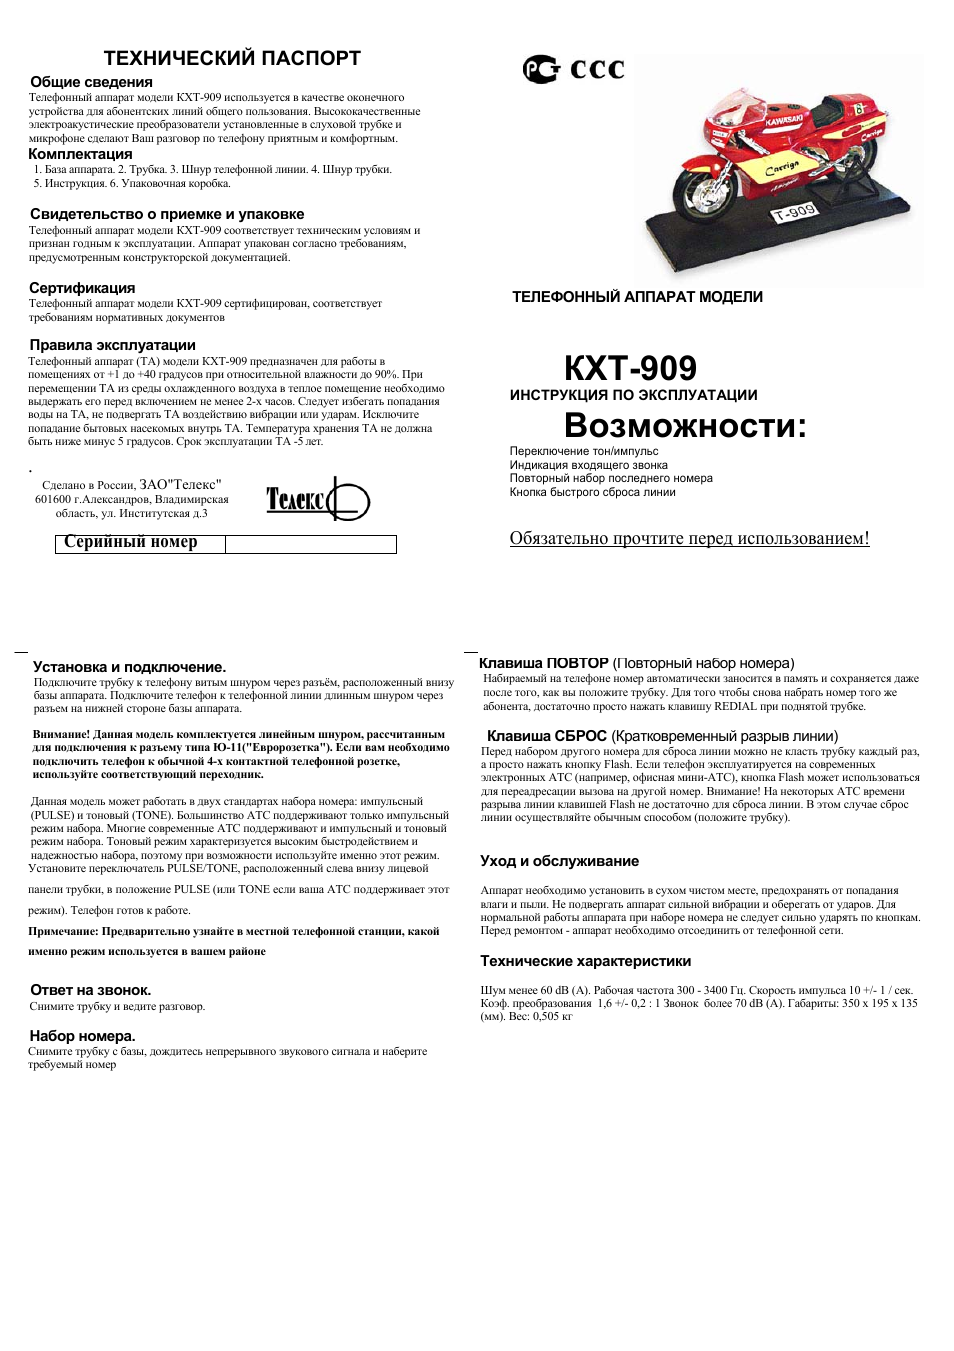 Инструкция по эксплуатации Телекс ТЕЛЕФОН KXT-909 | 1 cтраница